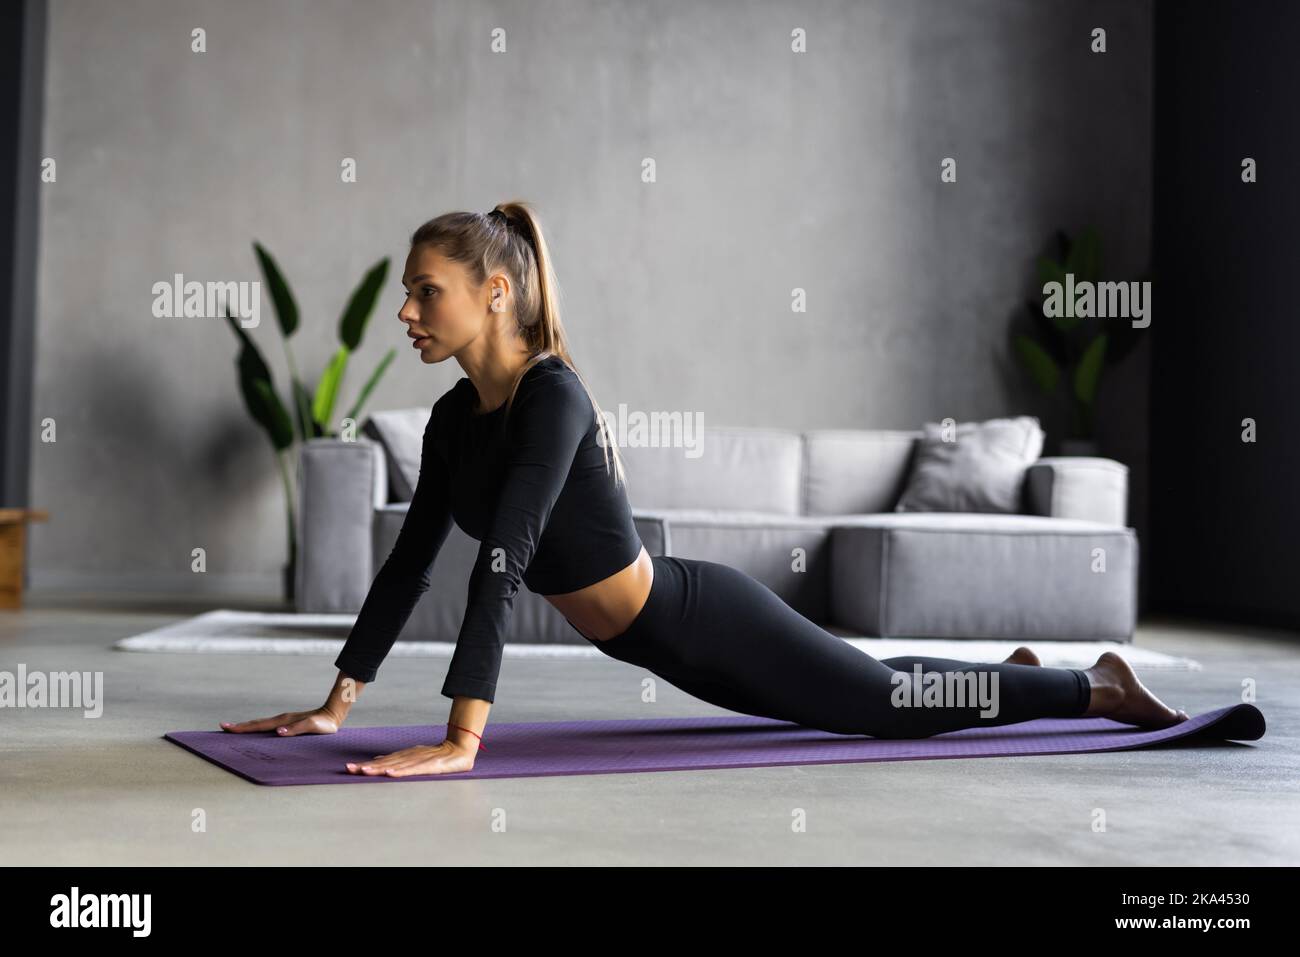 Entrenamiento en casa - mujer haciendo ejercicio viendo un programa de  televisión en pantalla plana programa de fitness yoga ejercicio en la sala  de estar. Yoga niña haciendo ejercicio de meditación en